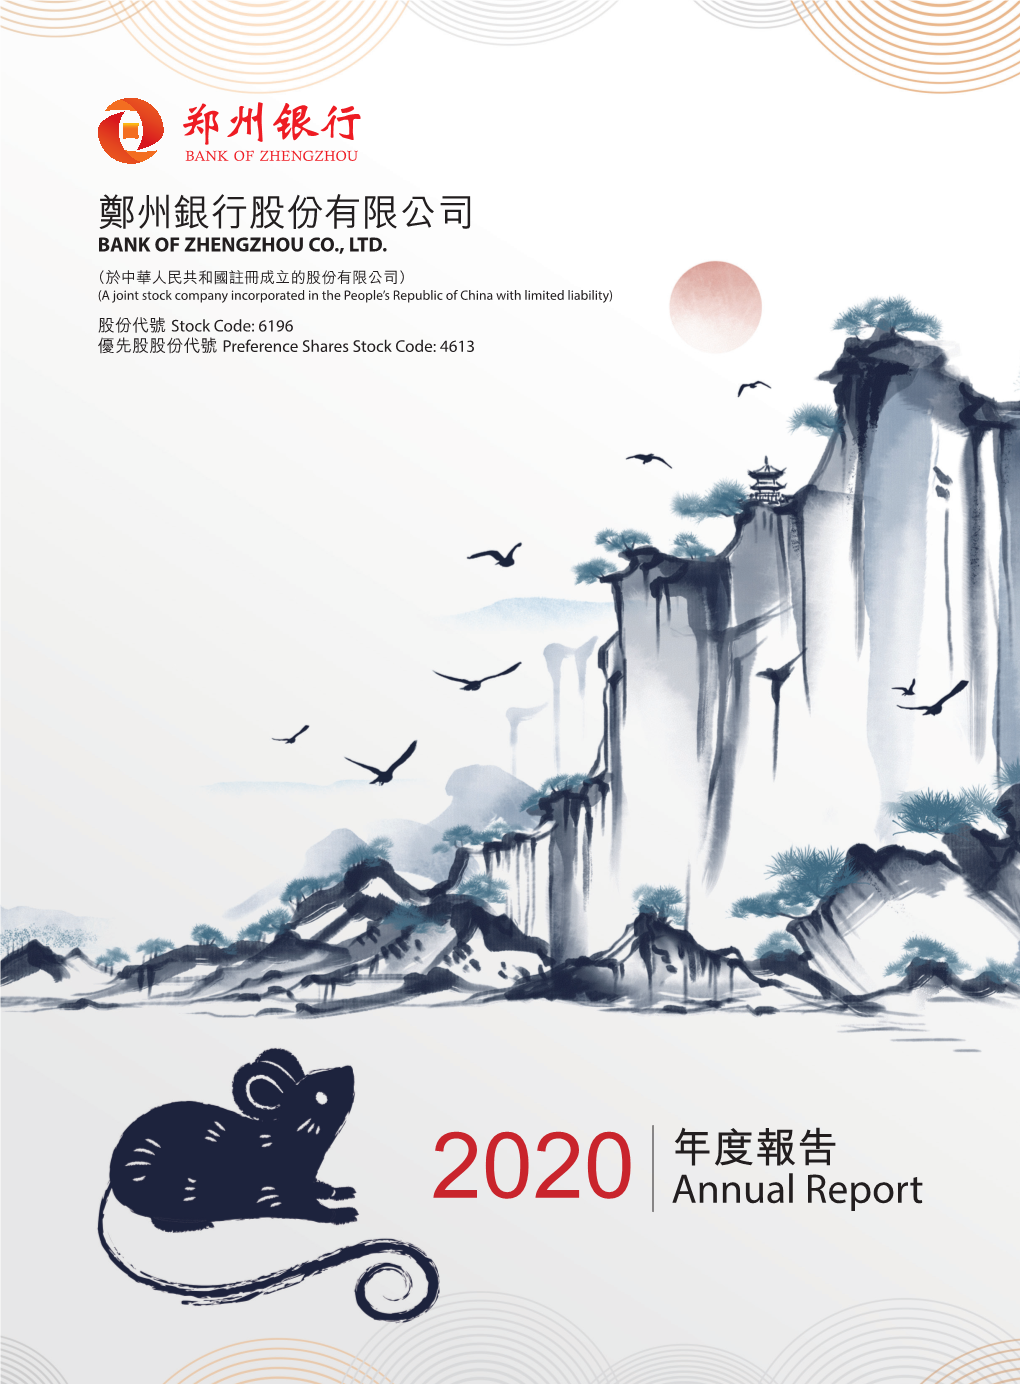 2020 年度報告 Annual Report